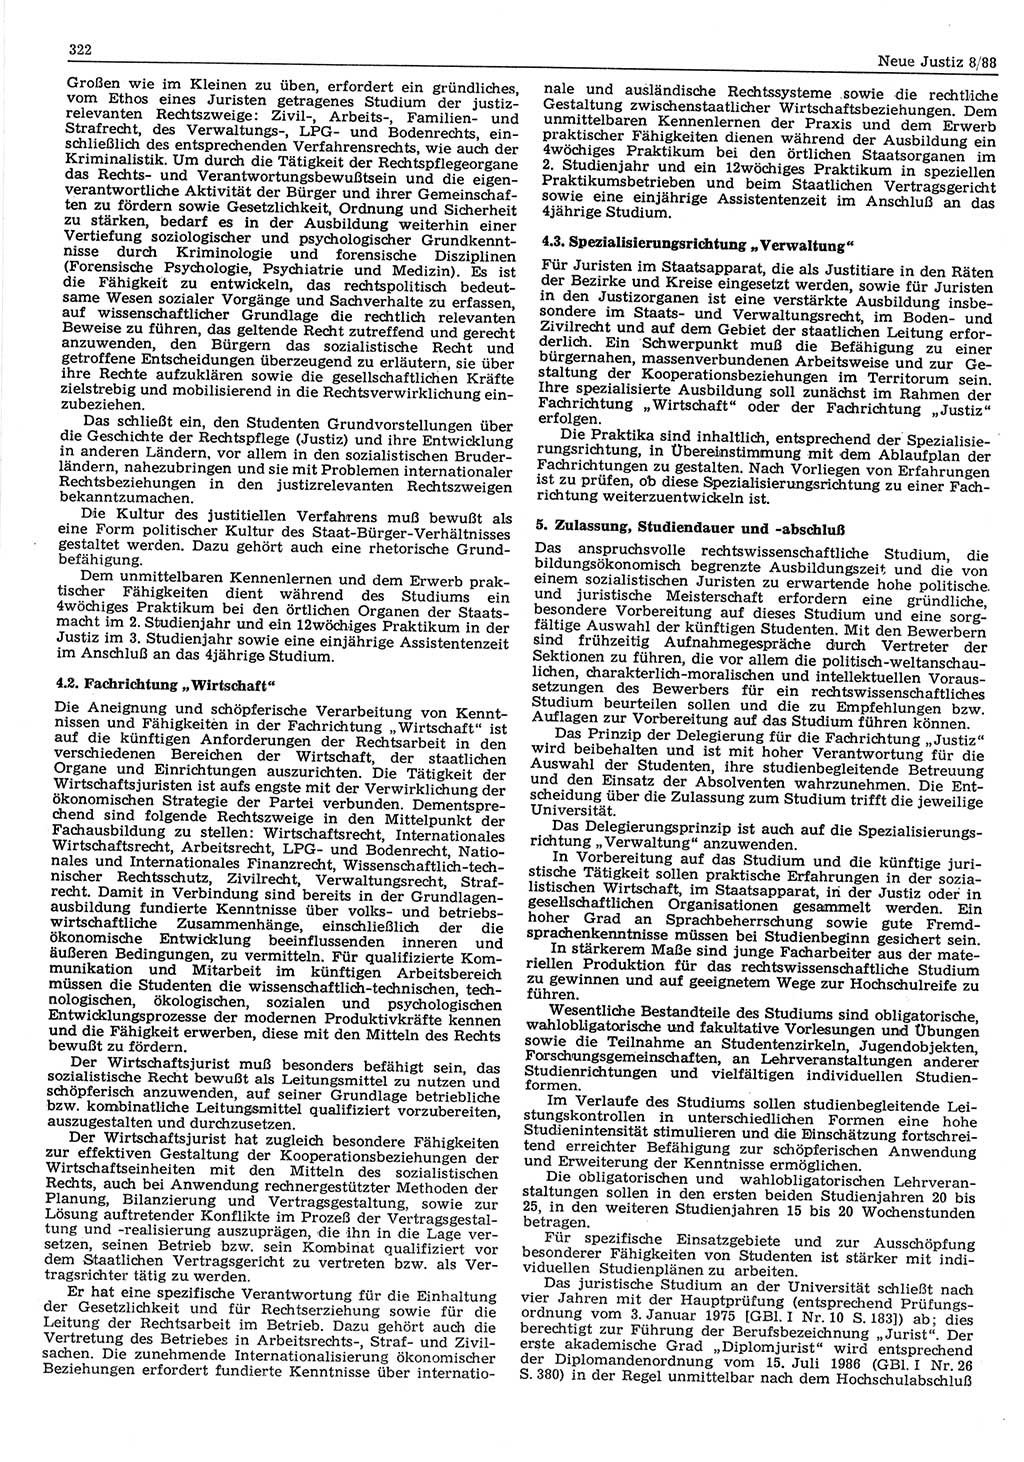 Neue Justiz (NJ), Zeitschrift für sozialistisches Recht und Gesetzlichkeit [Deutsche Demokratische Republik (DDR)], 42. Jahrgang 1988, Seite 322 (NJ DDR 1988, S. 322)